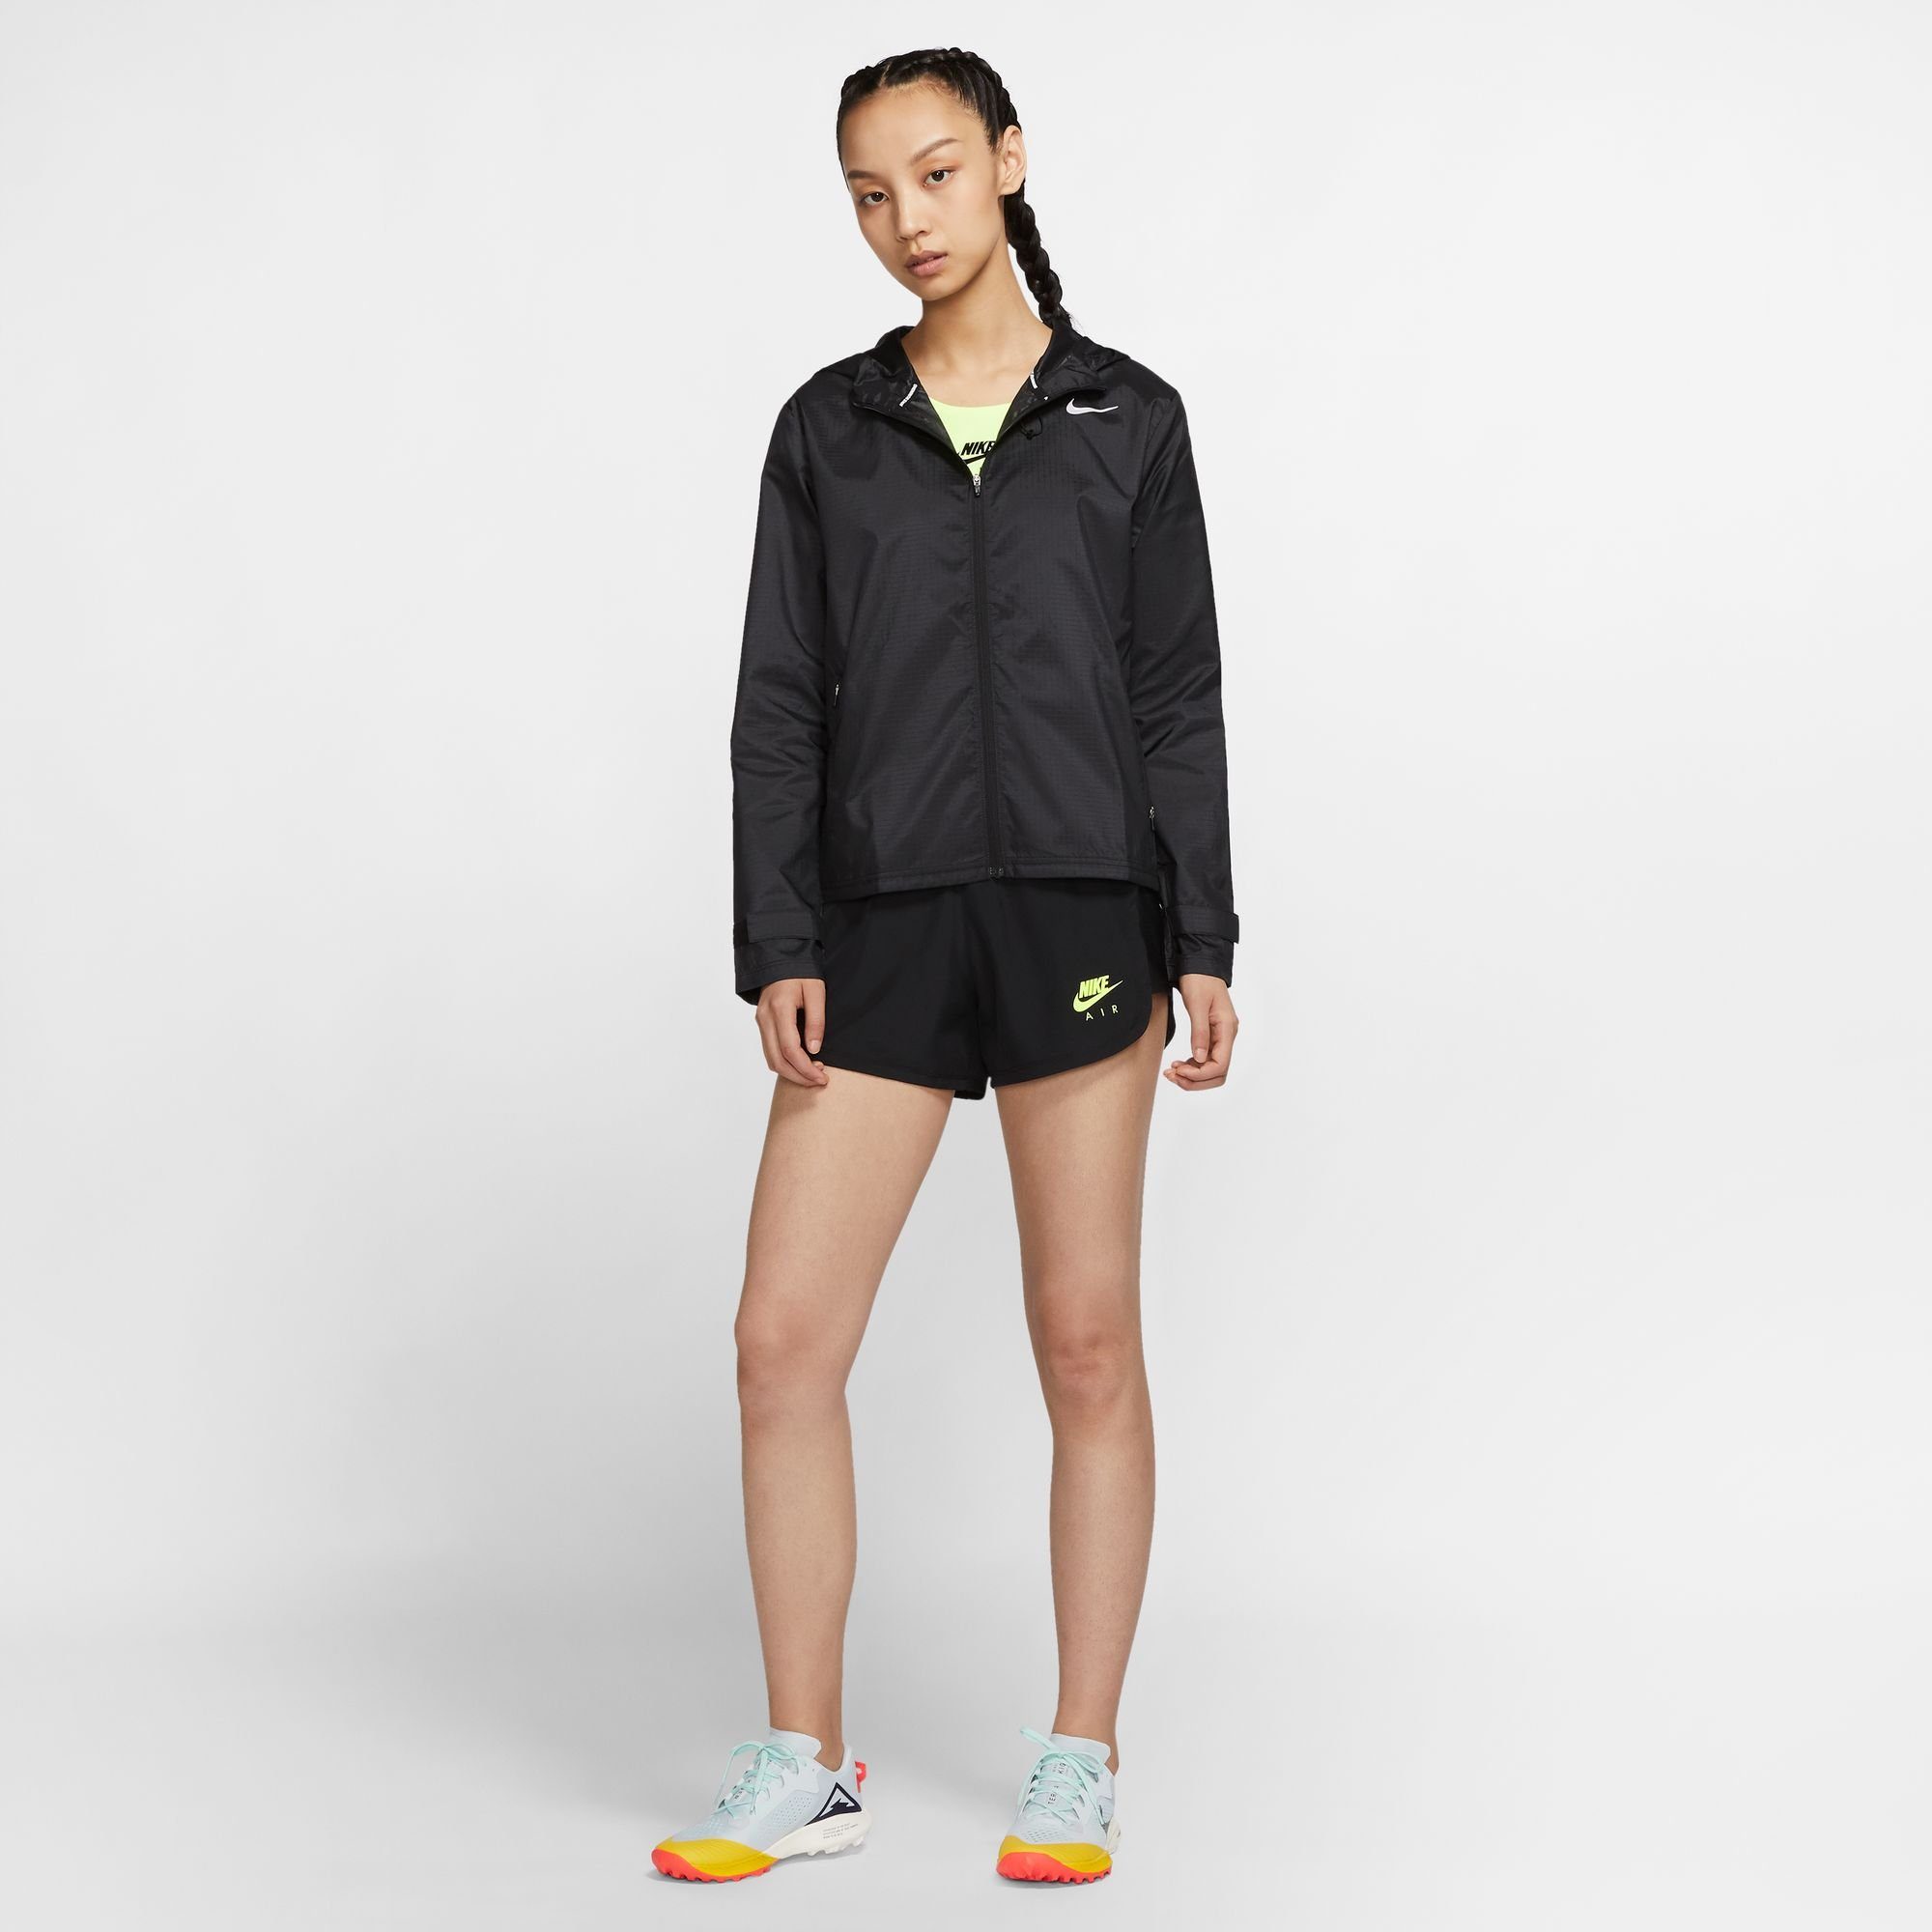 Nike Essential schwarz Jacket Running Women's Laufjacke